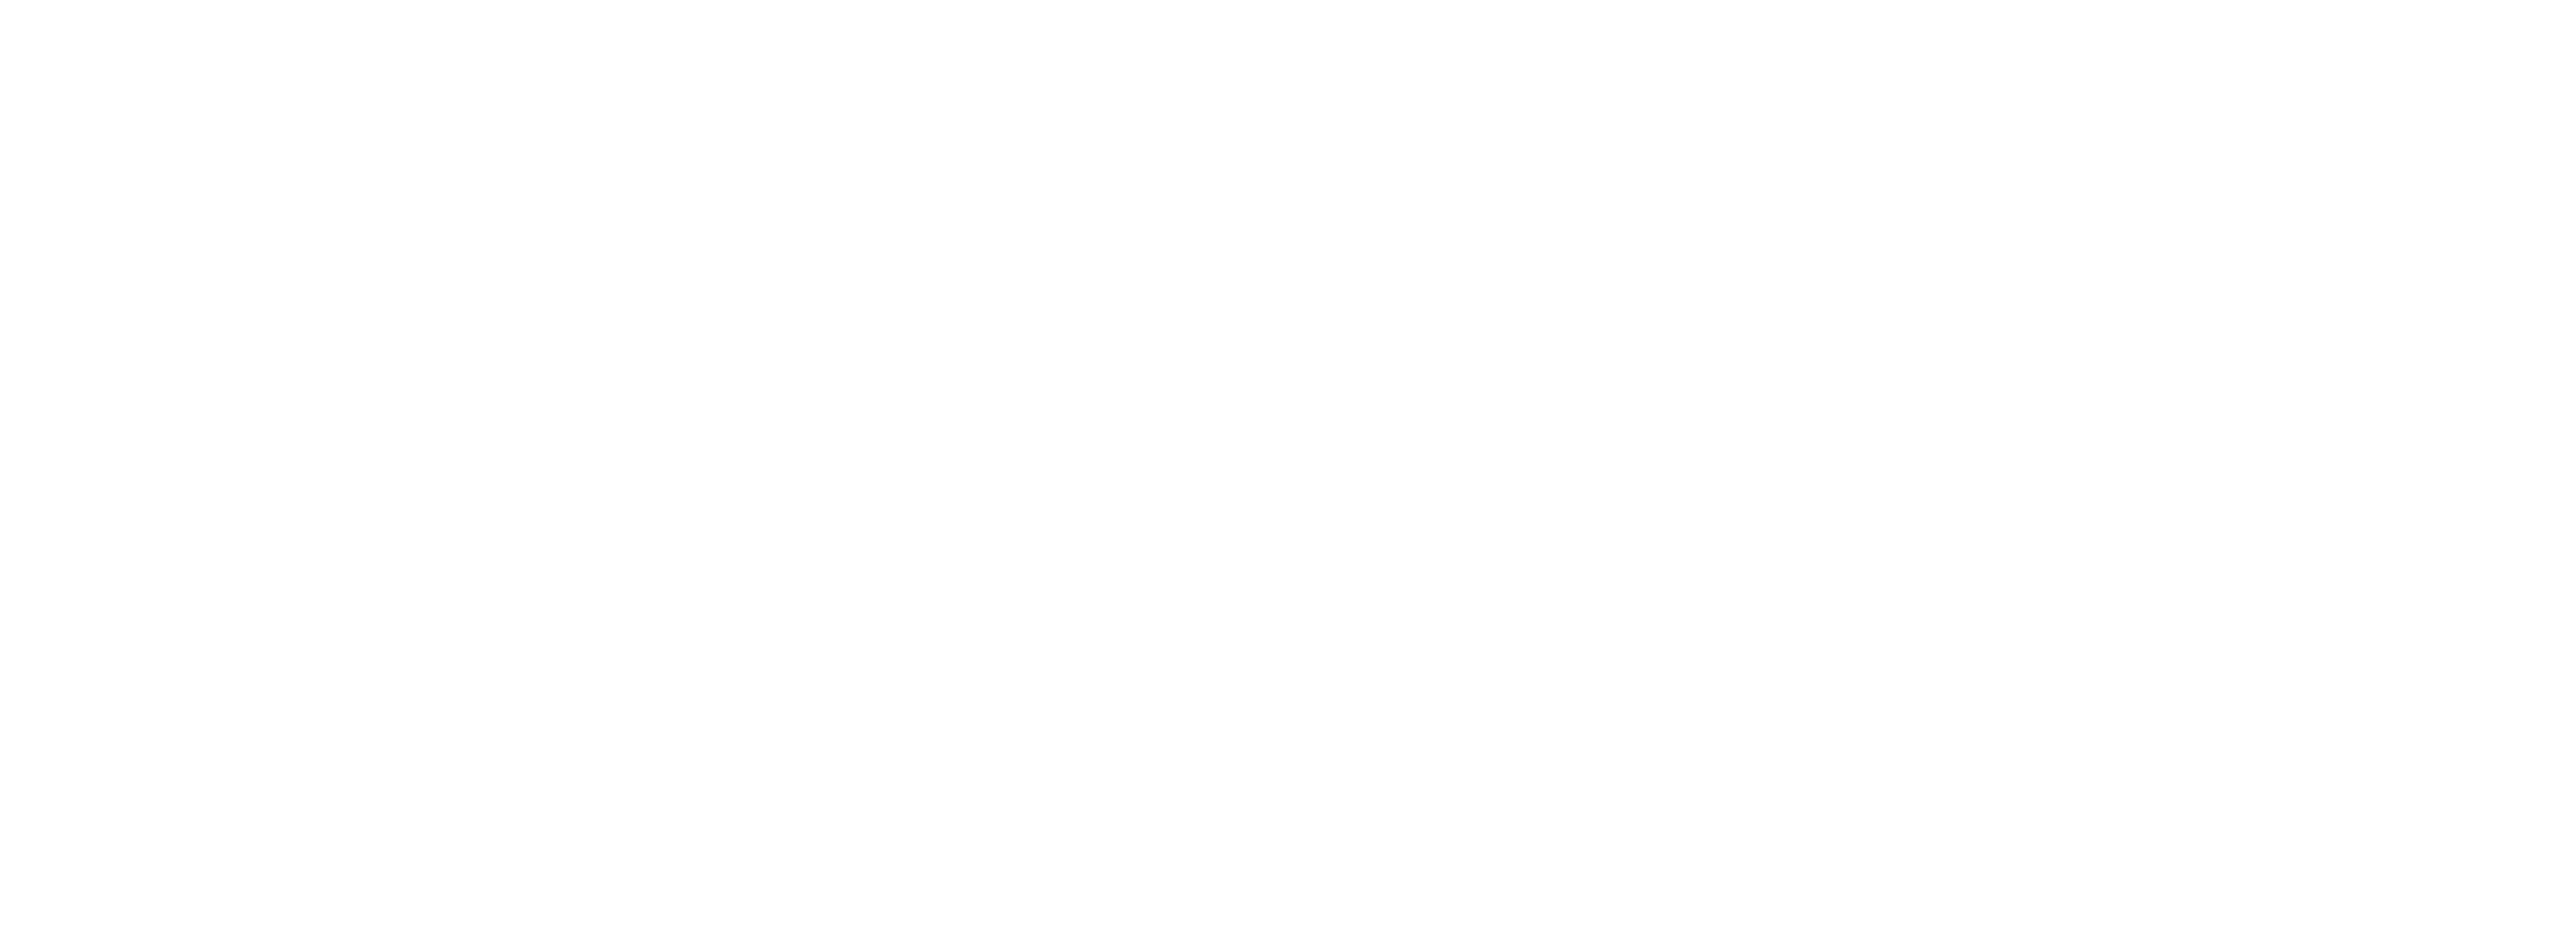 Alonzo Bodden: Historically Incorrect logo